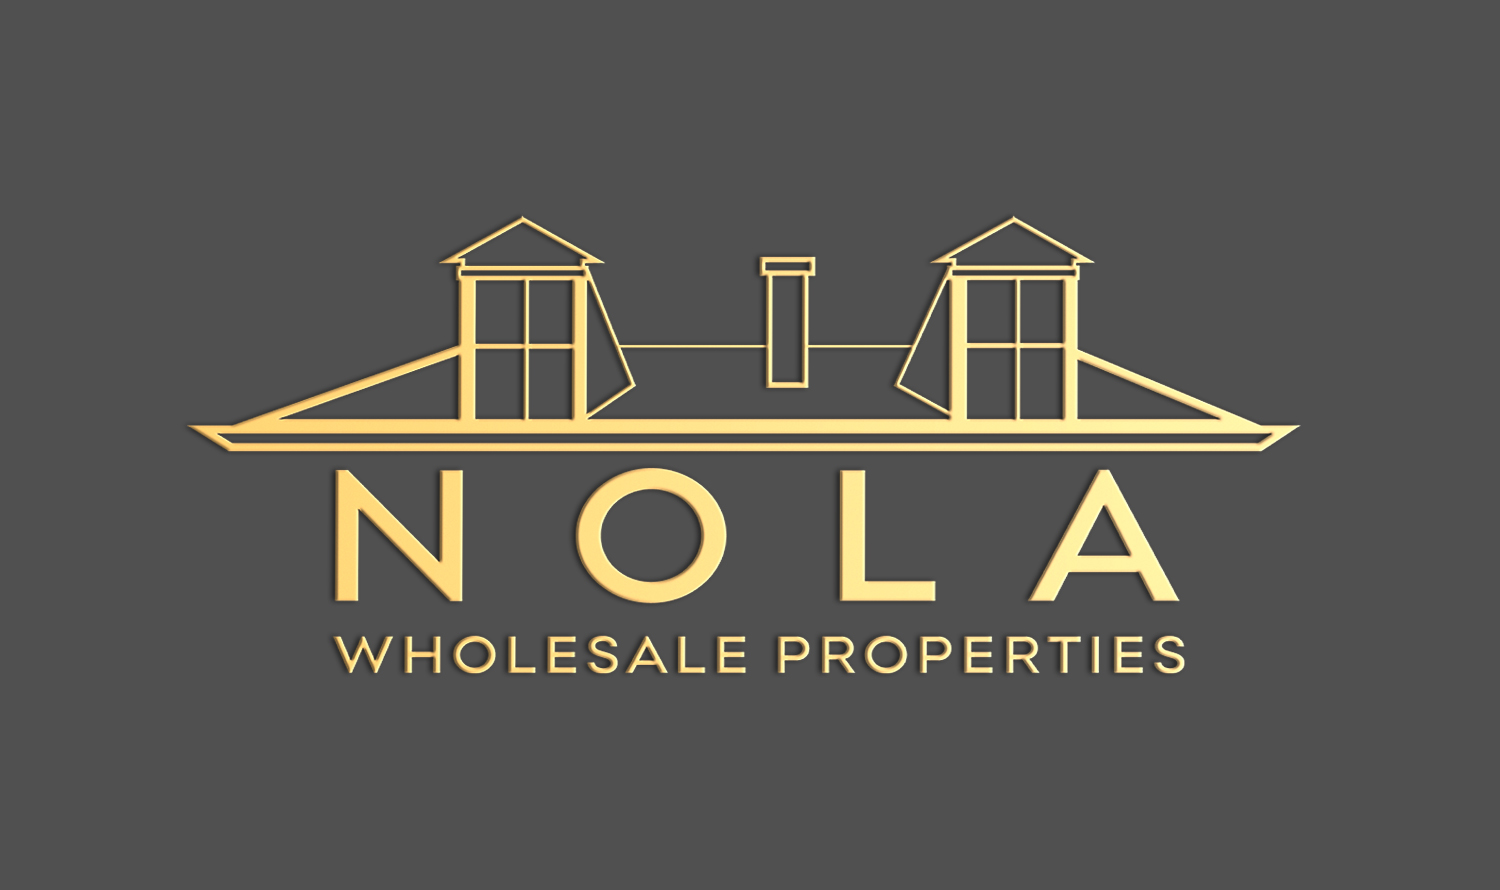 NOLA Wholesale Properties